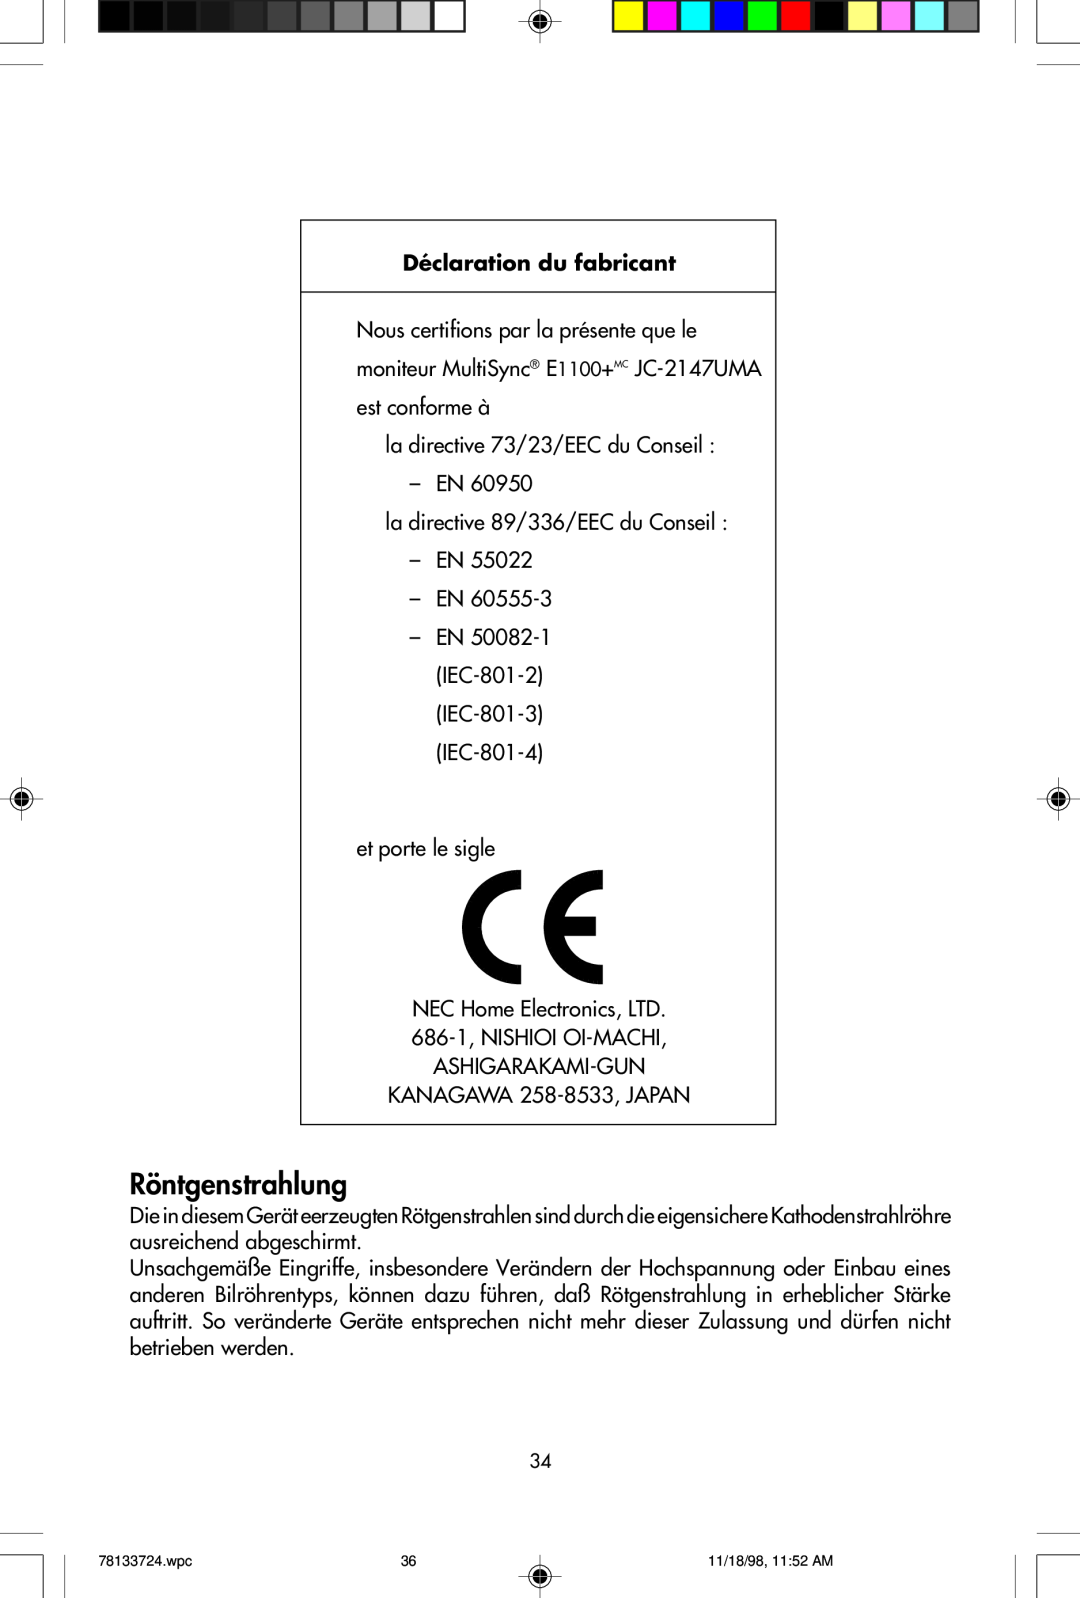 NEC E1100+ user manual Röntgenstrahlung, Déclaration du fabricant 